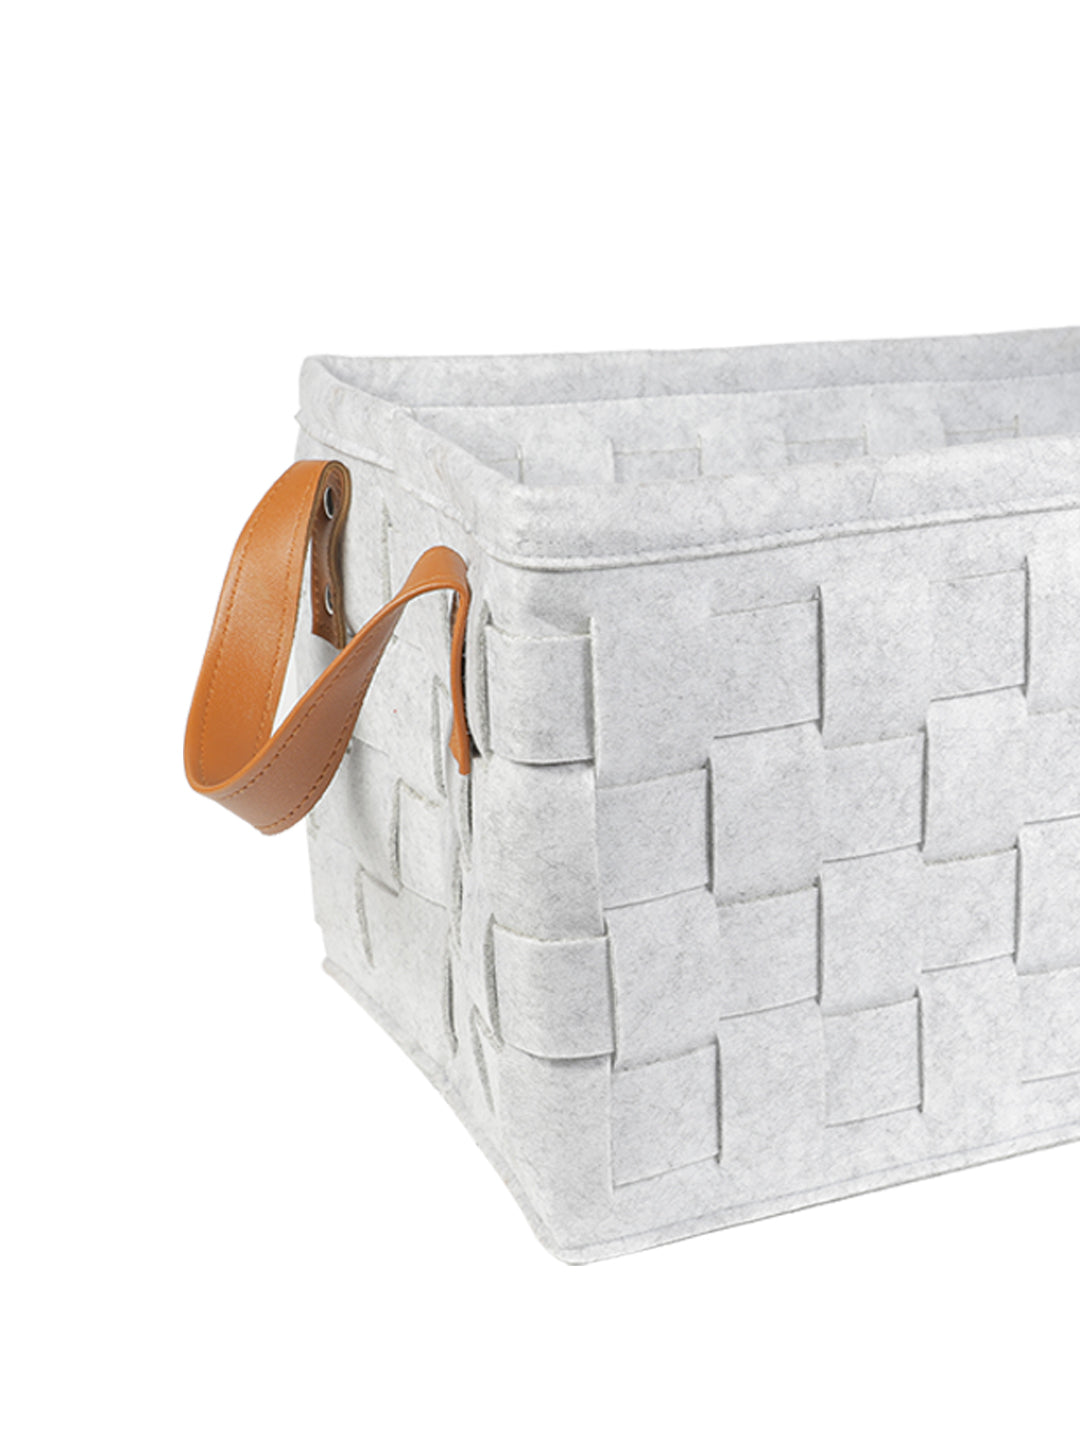 VON CASA Felt Fabric Storage Basket Organizer Boxes - 25 Litre, Light Grey